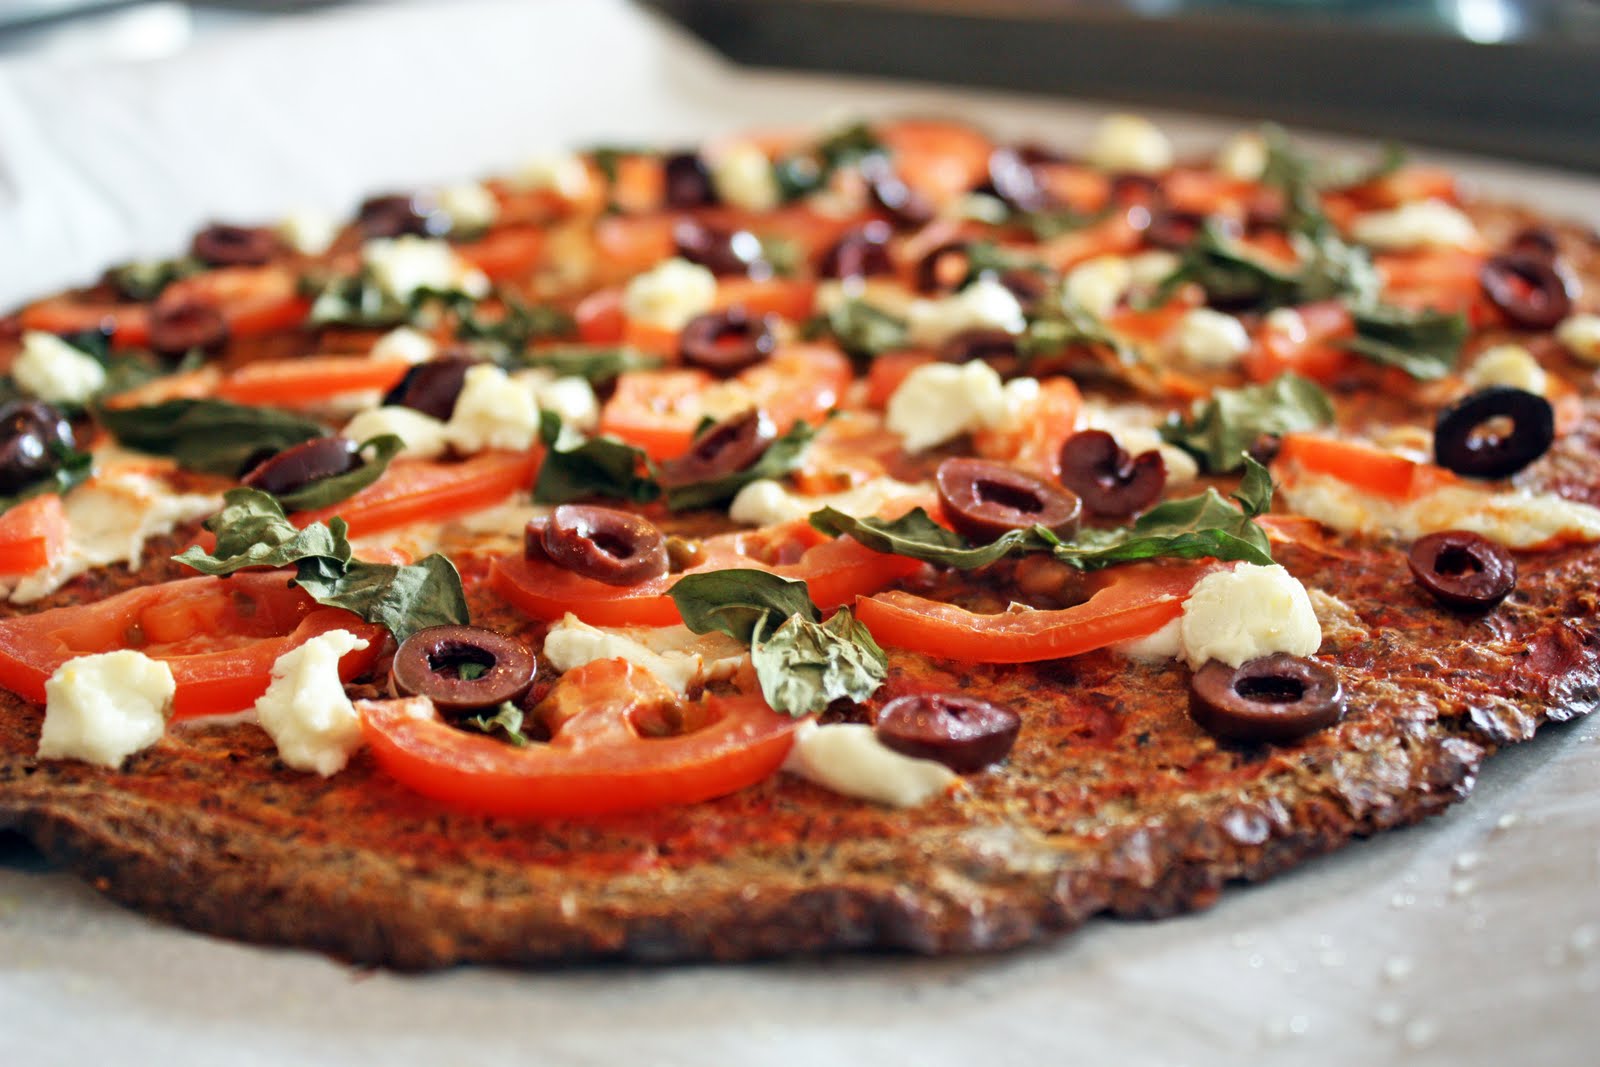 Вкуснейшие диетические рецепты: пп пицца — на выходных гуляем без угрызений совести! бонус: таблицы калорийности обычной